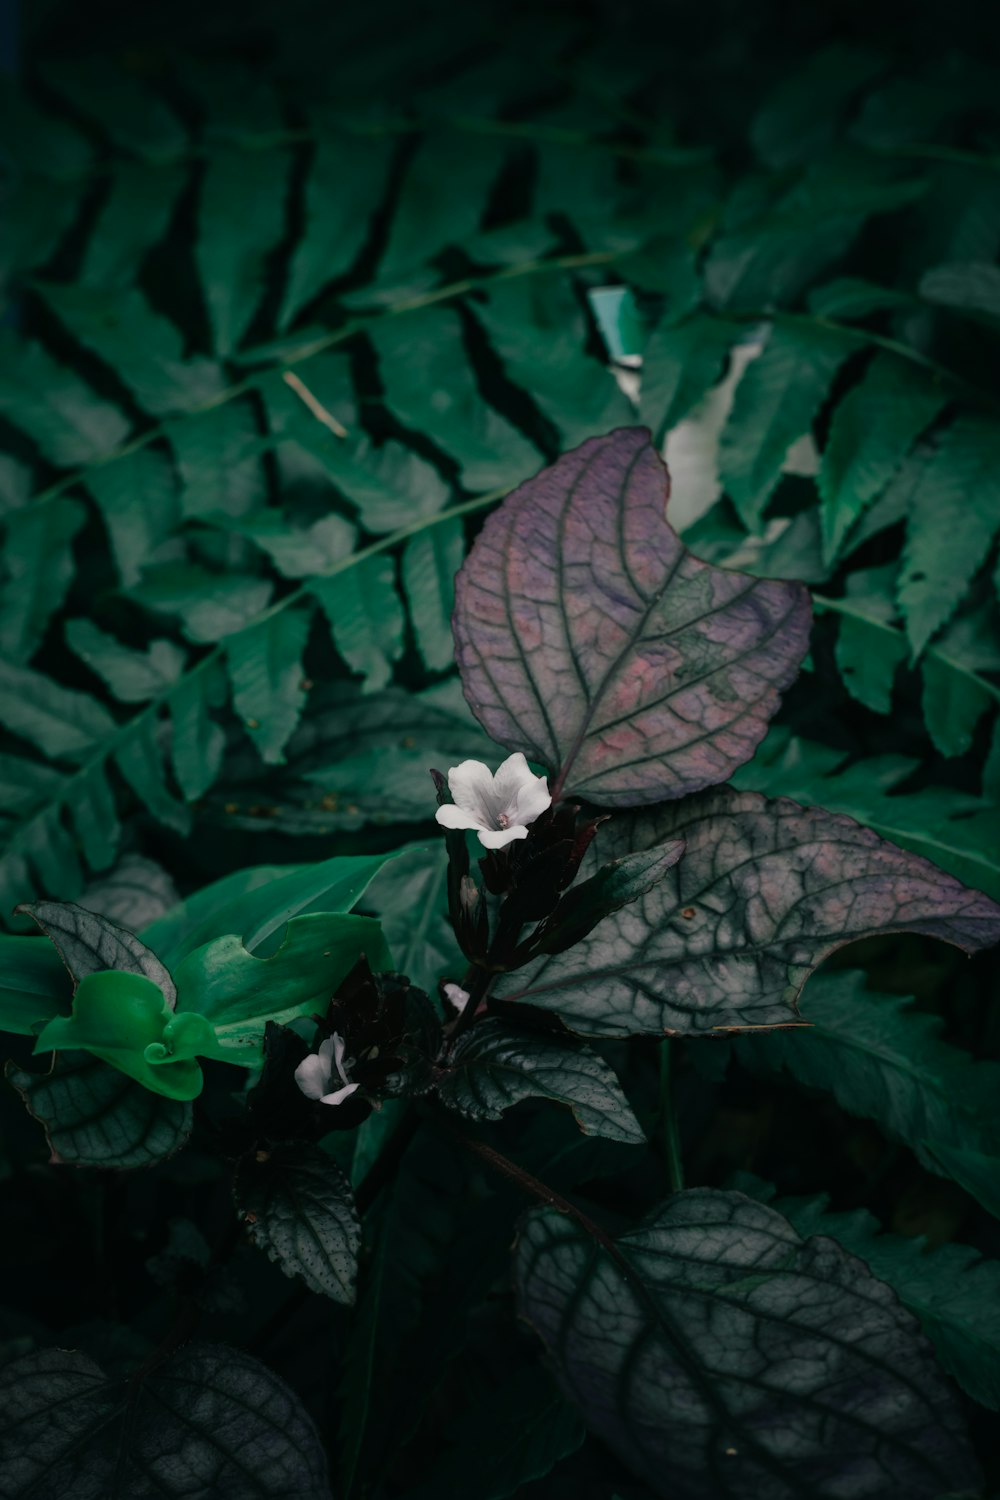 Una pequeña flor blanca sentada encima de una exuberante planta verde